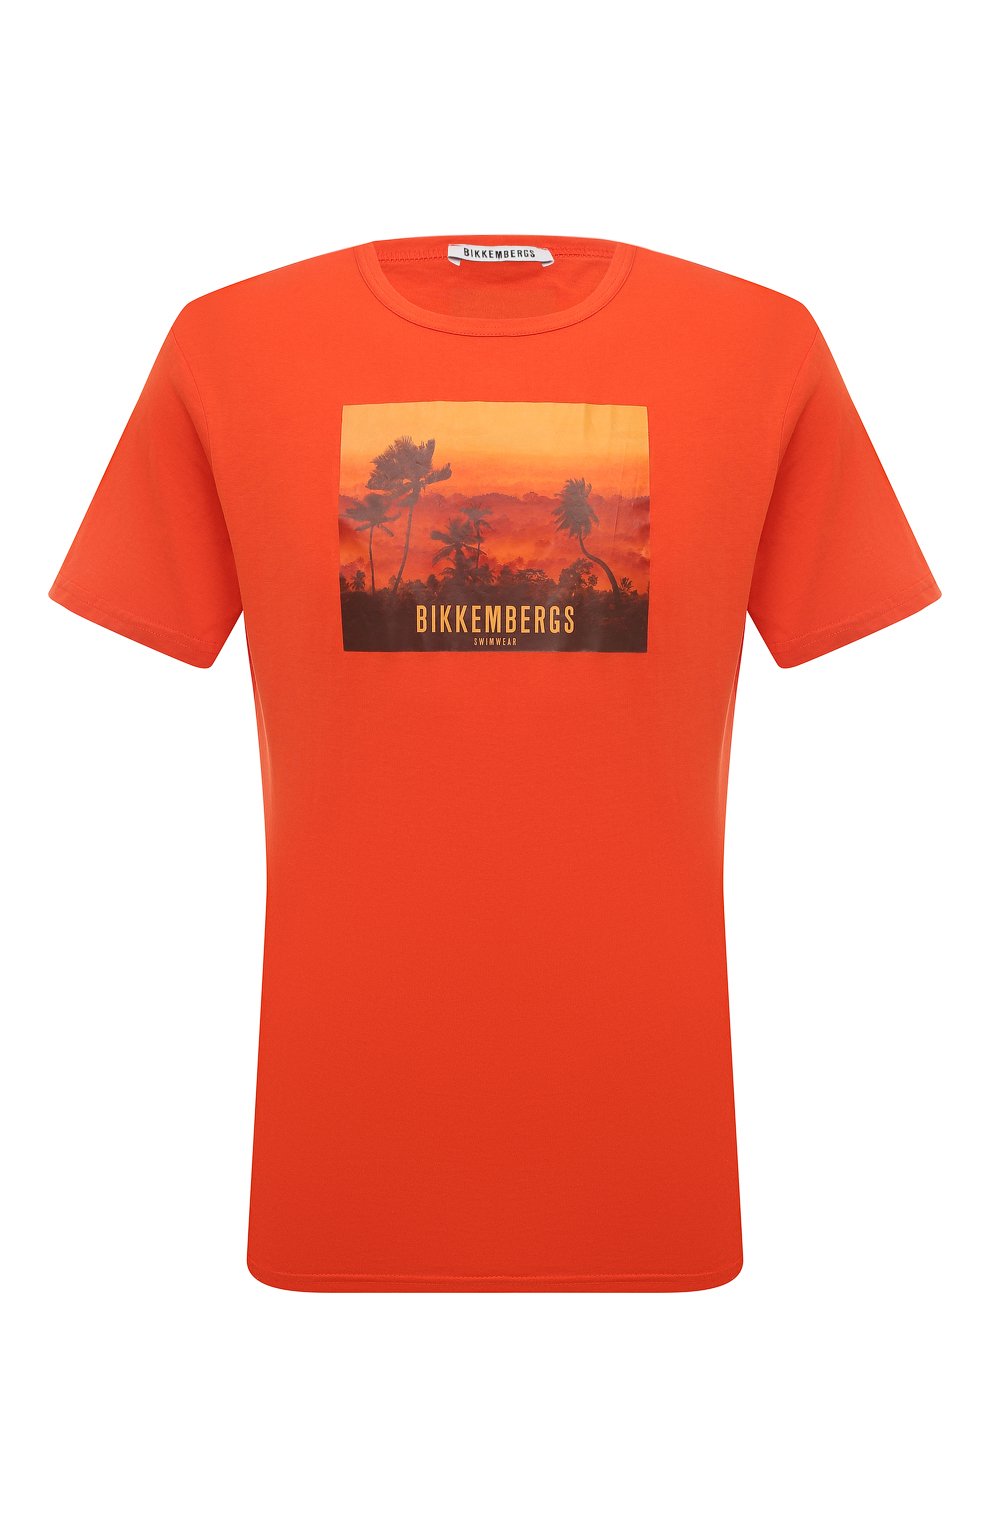 Футболки Dirk Bikkembergs, Хлопковая футболка Dirk Bikkembergs, Бангладеш, Оранжевый, Хлопок: 100%;, 13366395  - купить